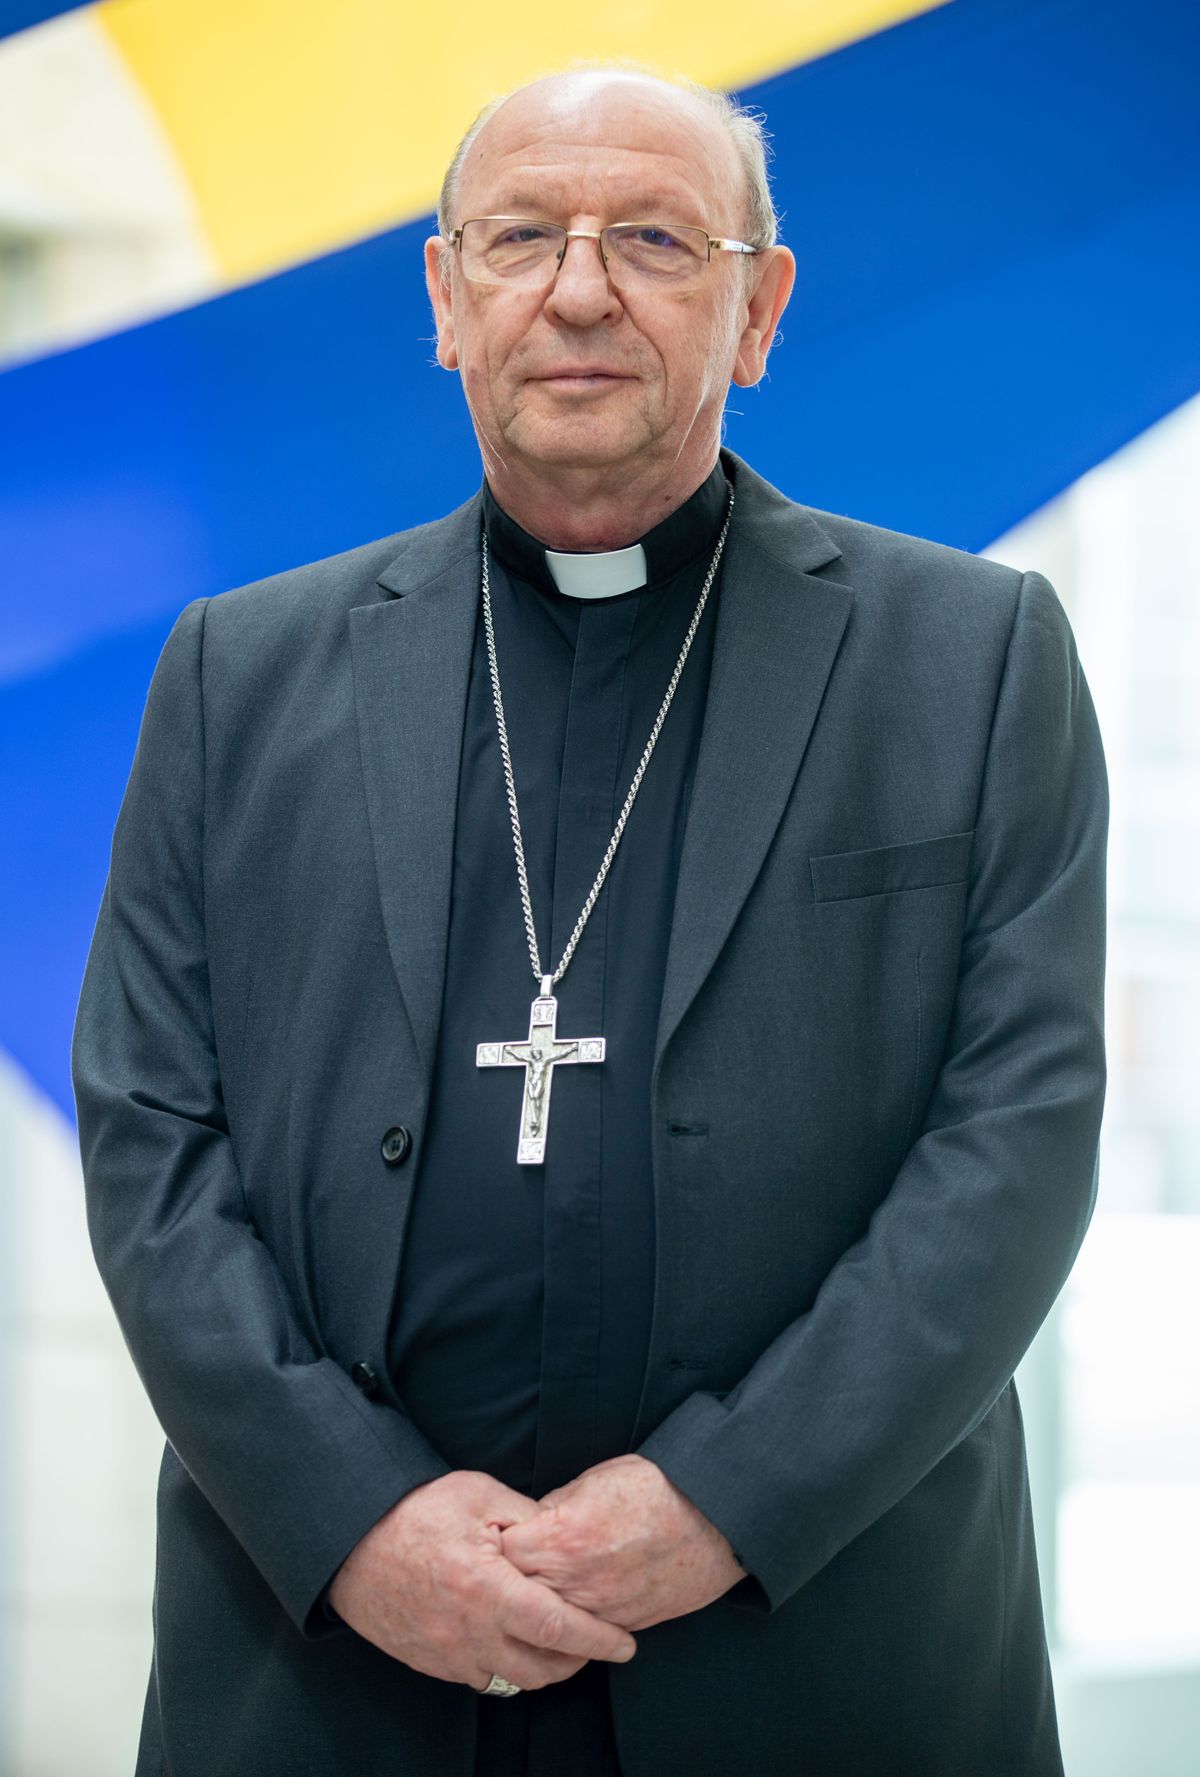 Palánki Ferenc, a Debrecen-Nyíregyházi Egyházmegye megyéspüspök Debrecen díszpolgára lett haon